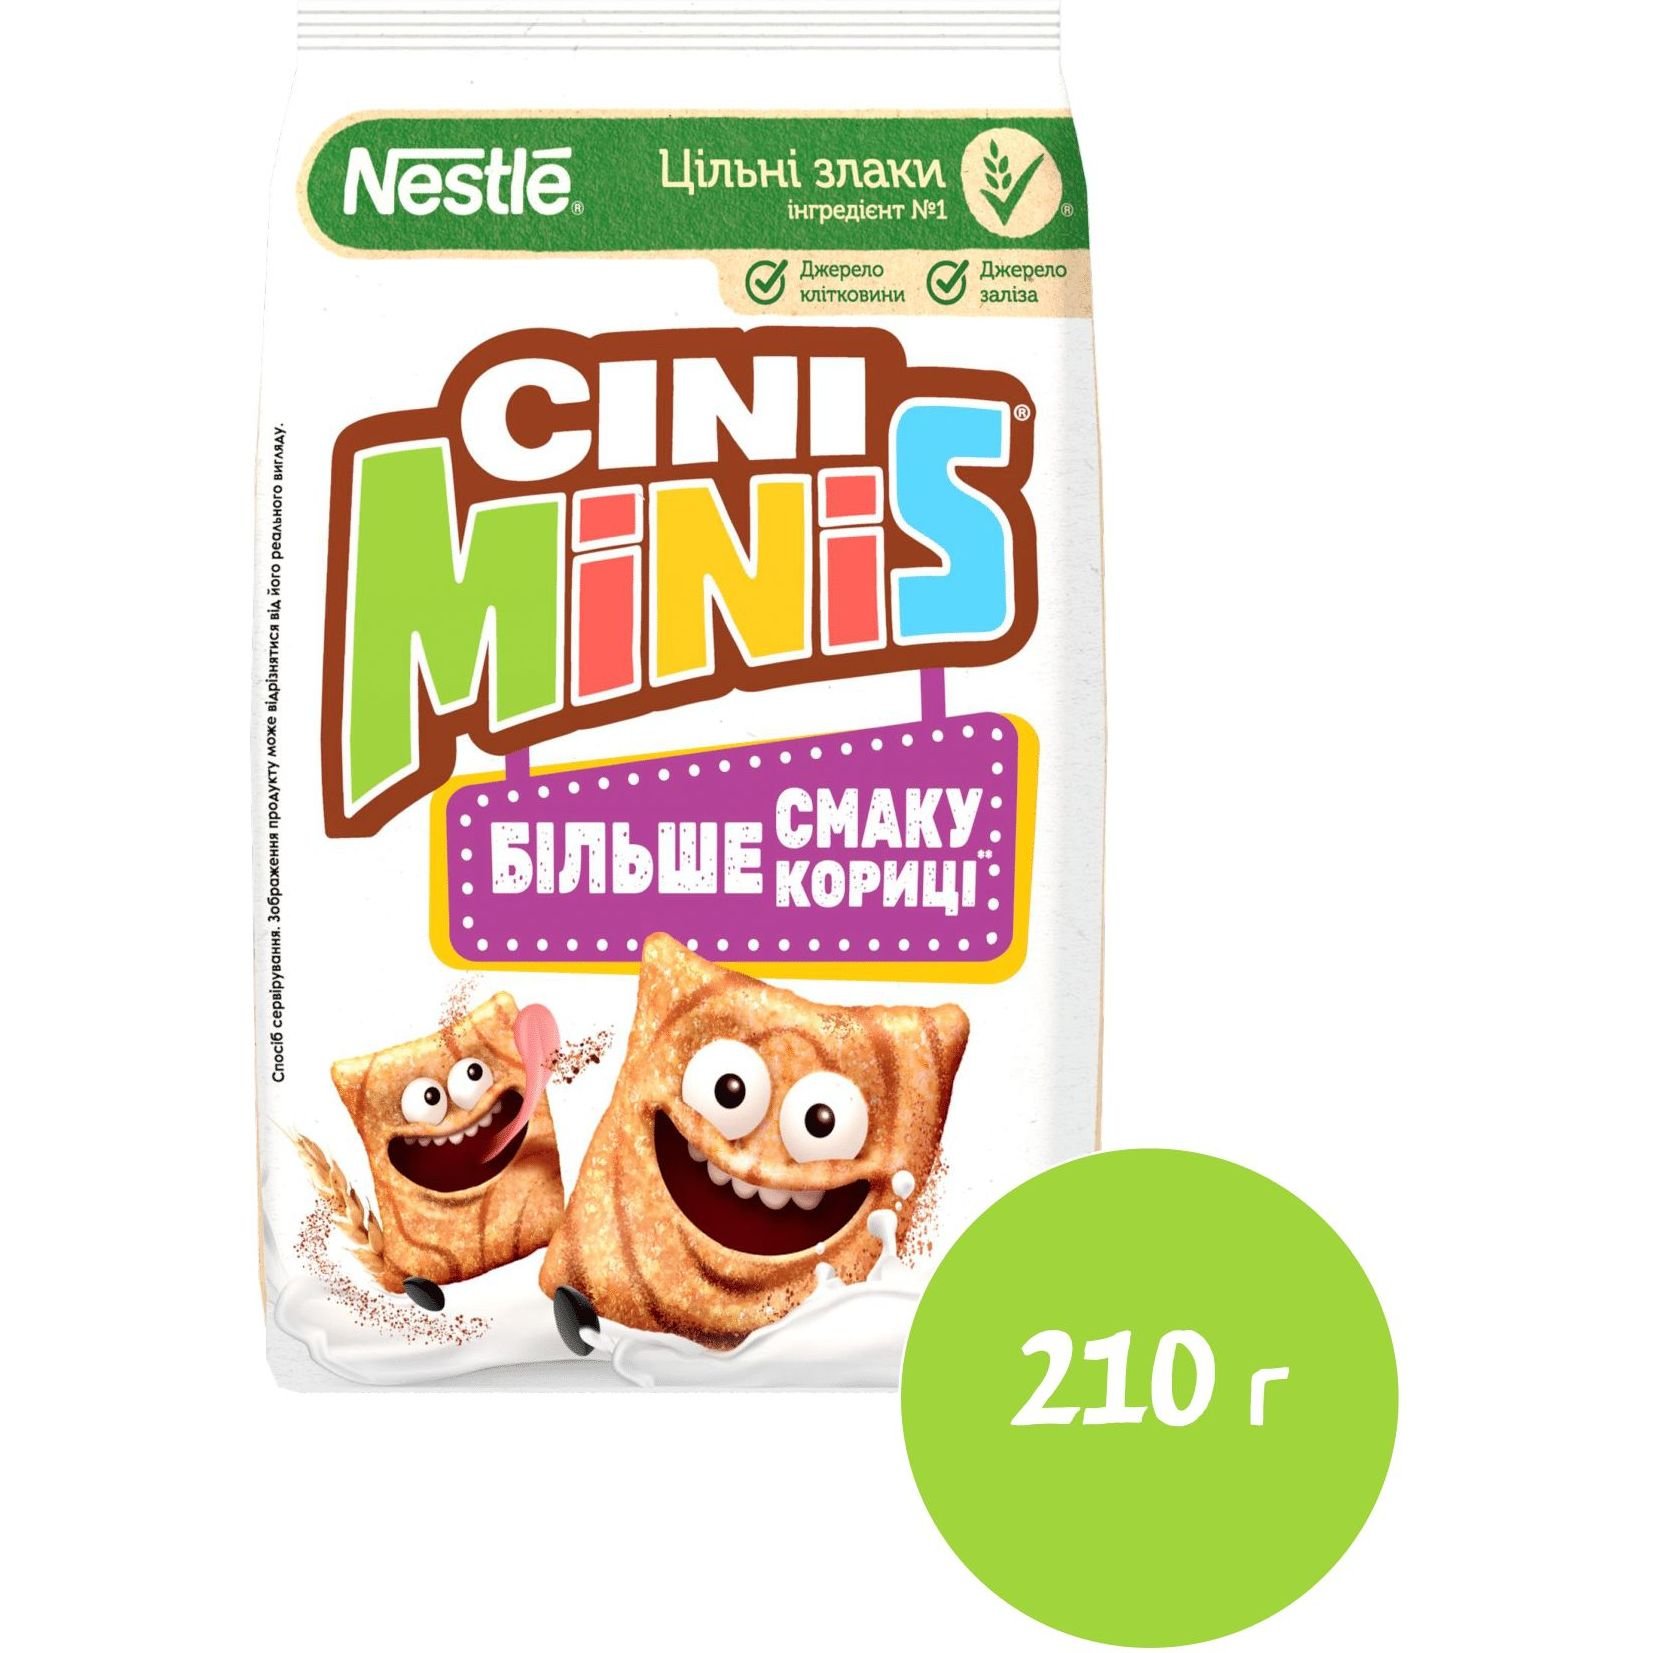 Готовий сухий сніданок Cini Minis з корицею 210 г - фото 2